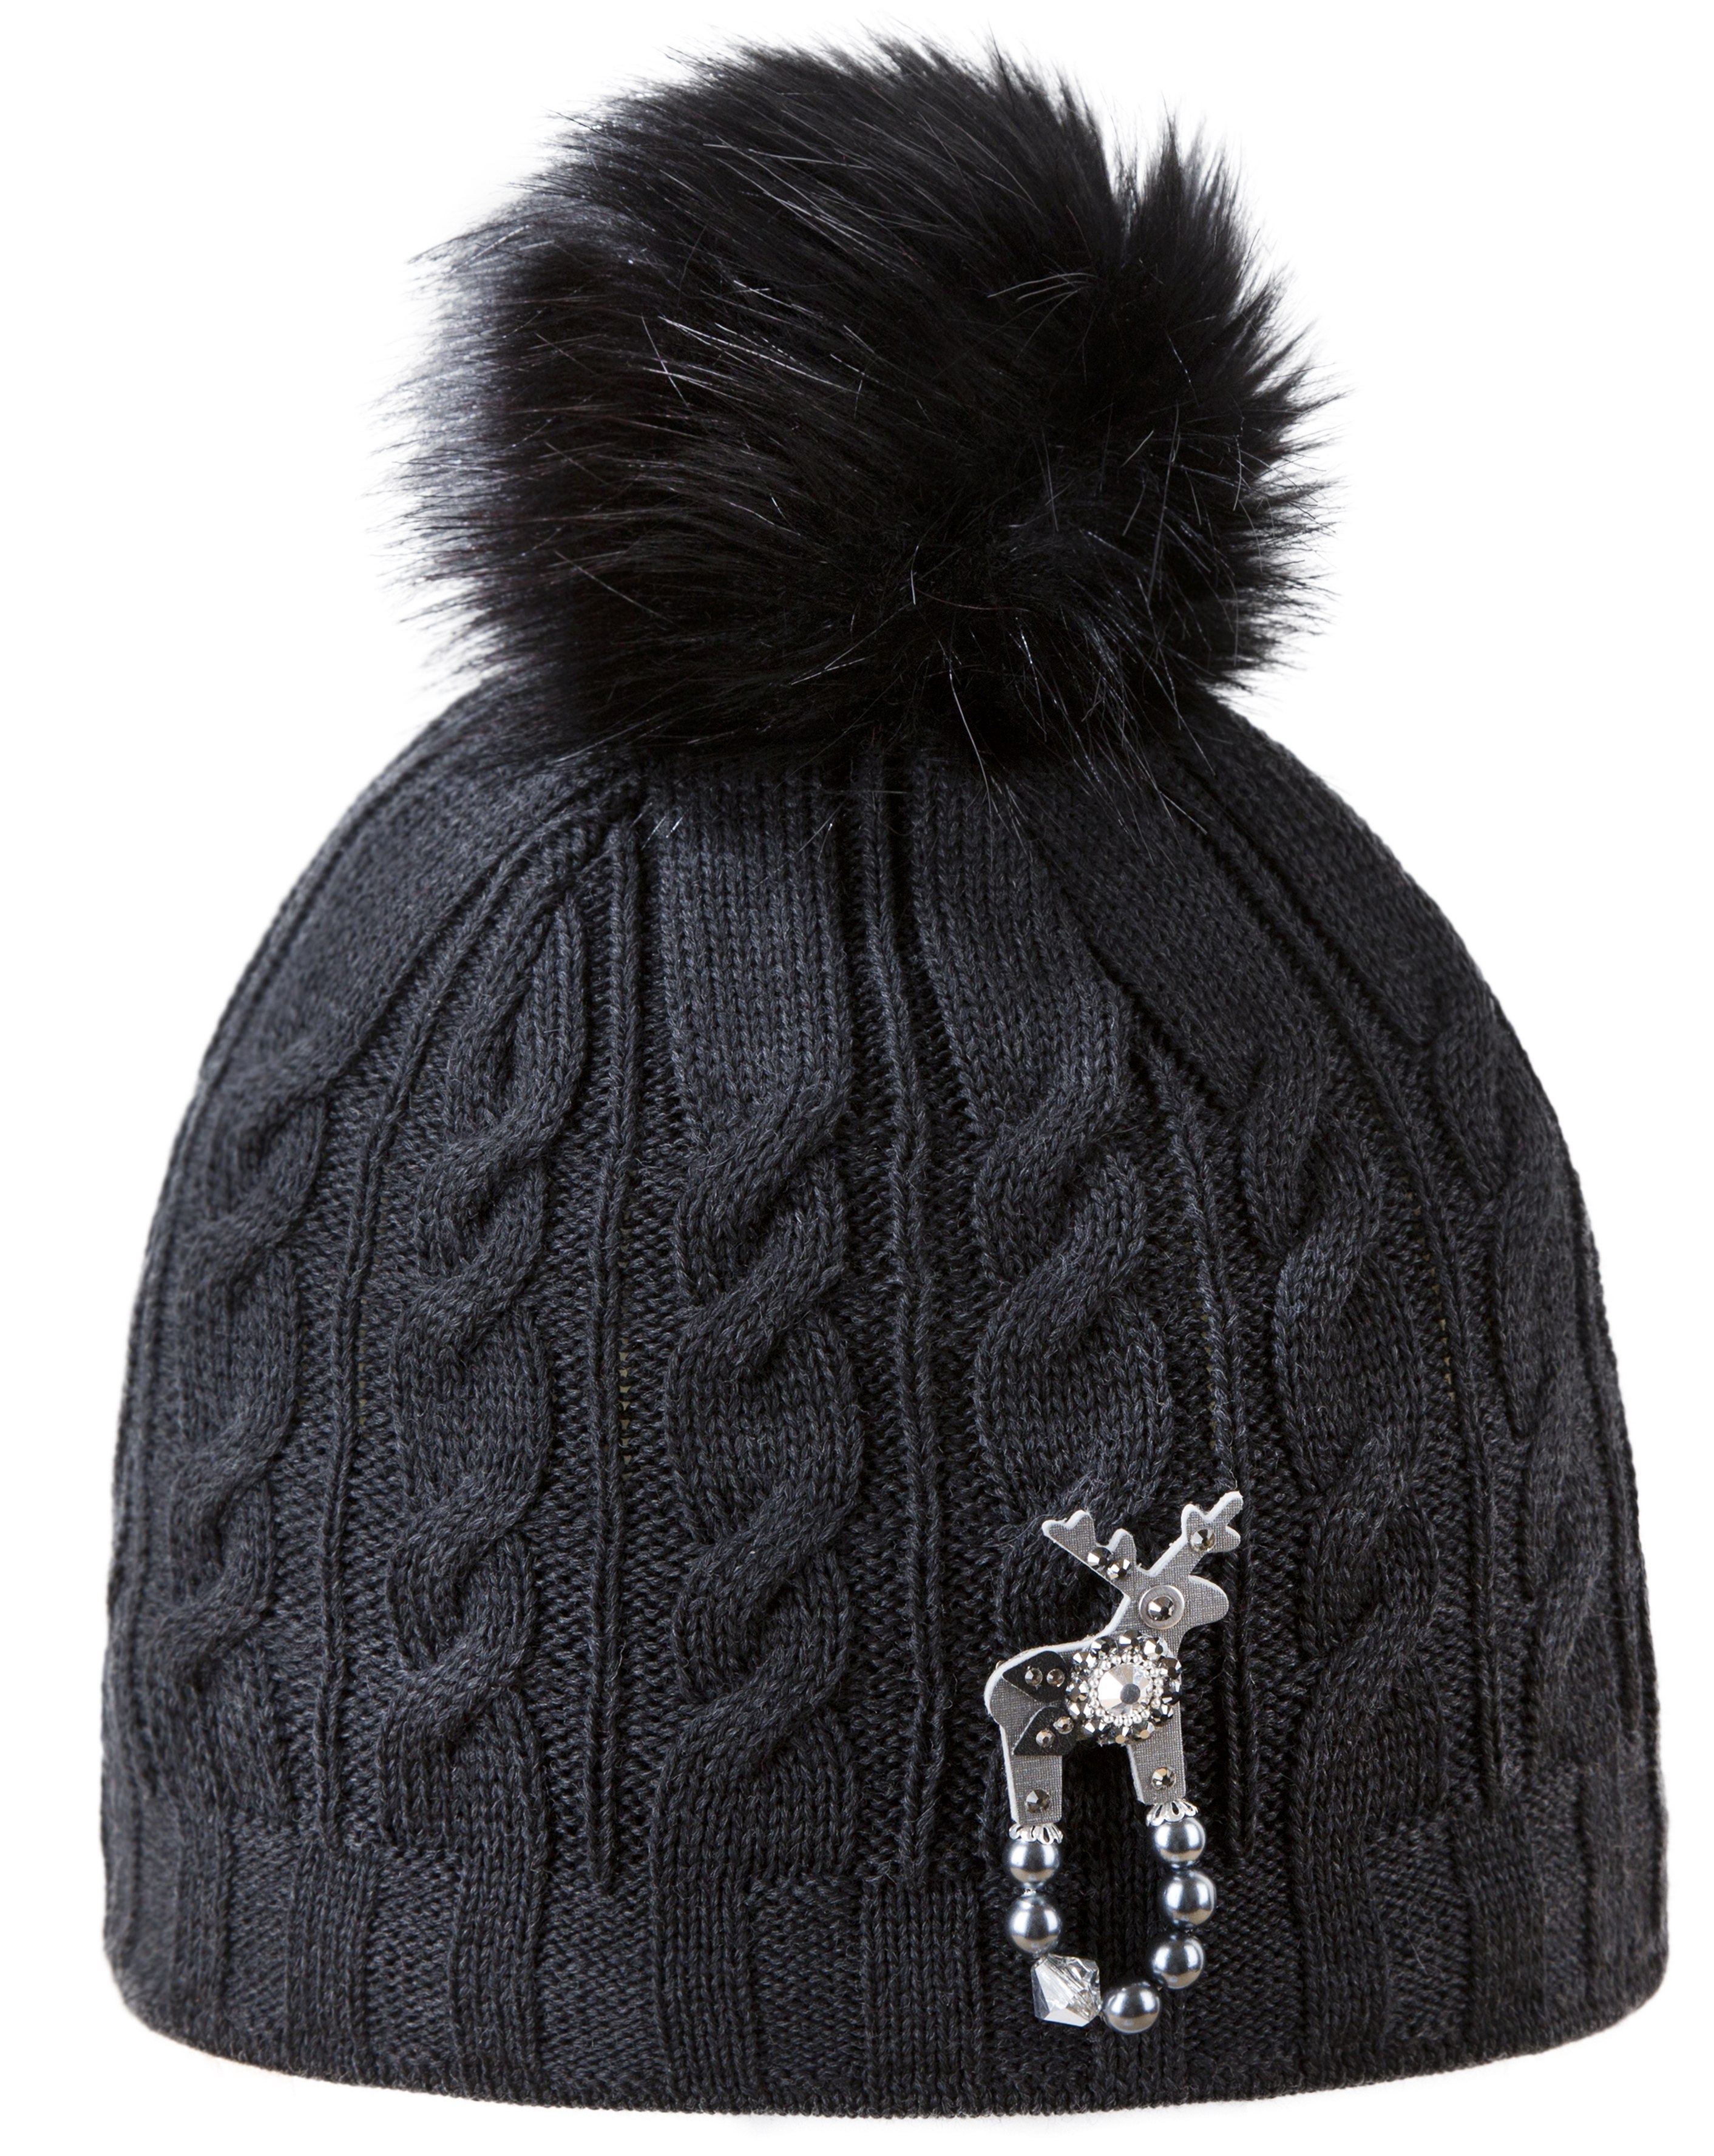 Women’s winter hat with deer brooch